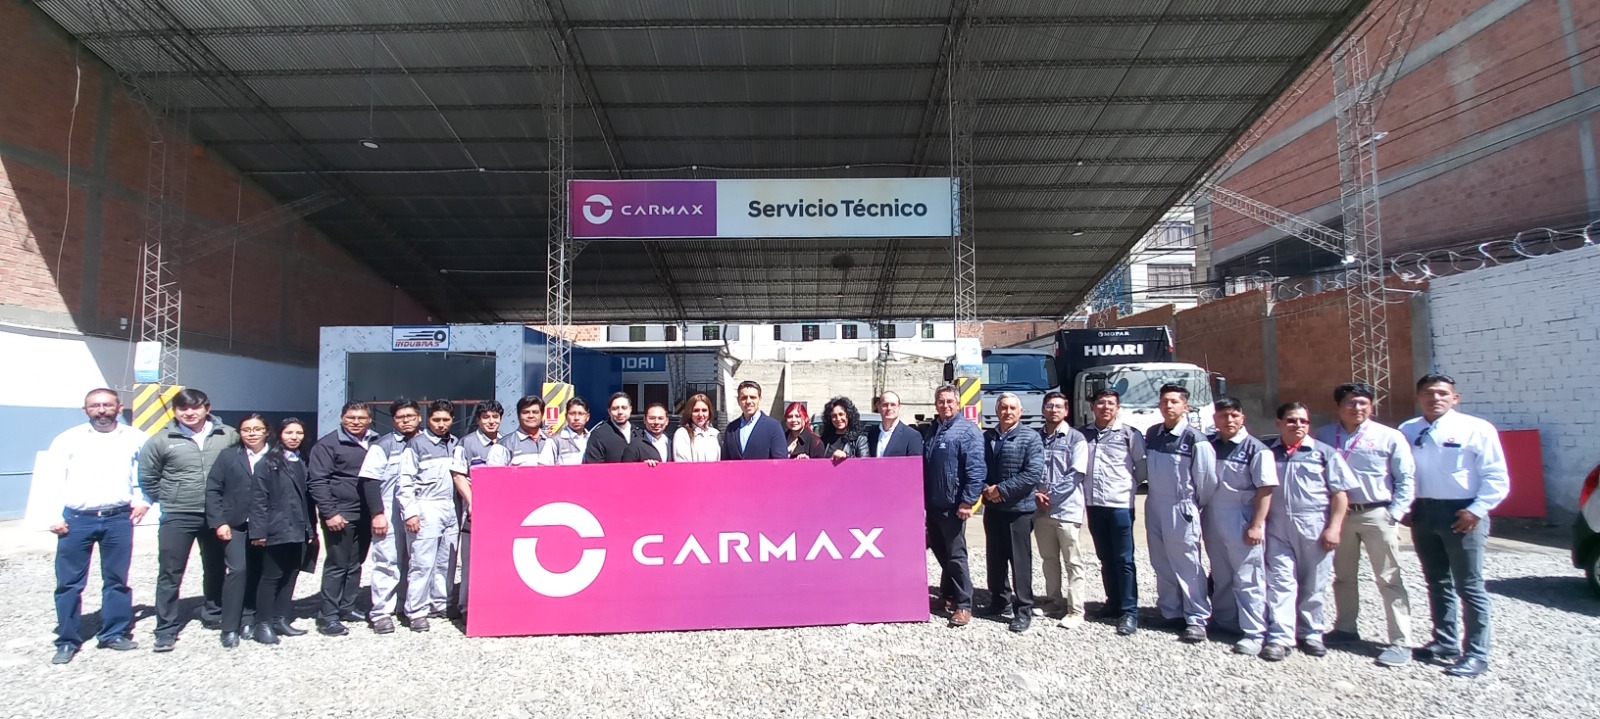 Carmax inaugura un moderno y completo taller de servicio técnico en La Paz